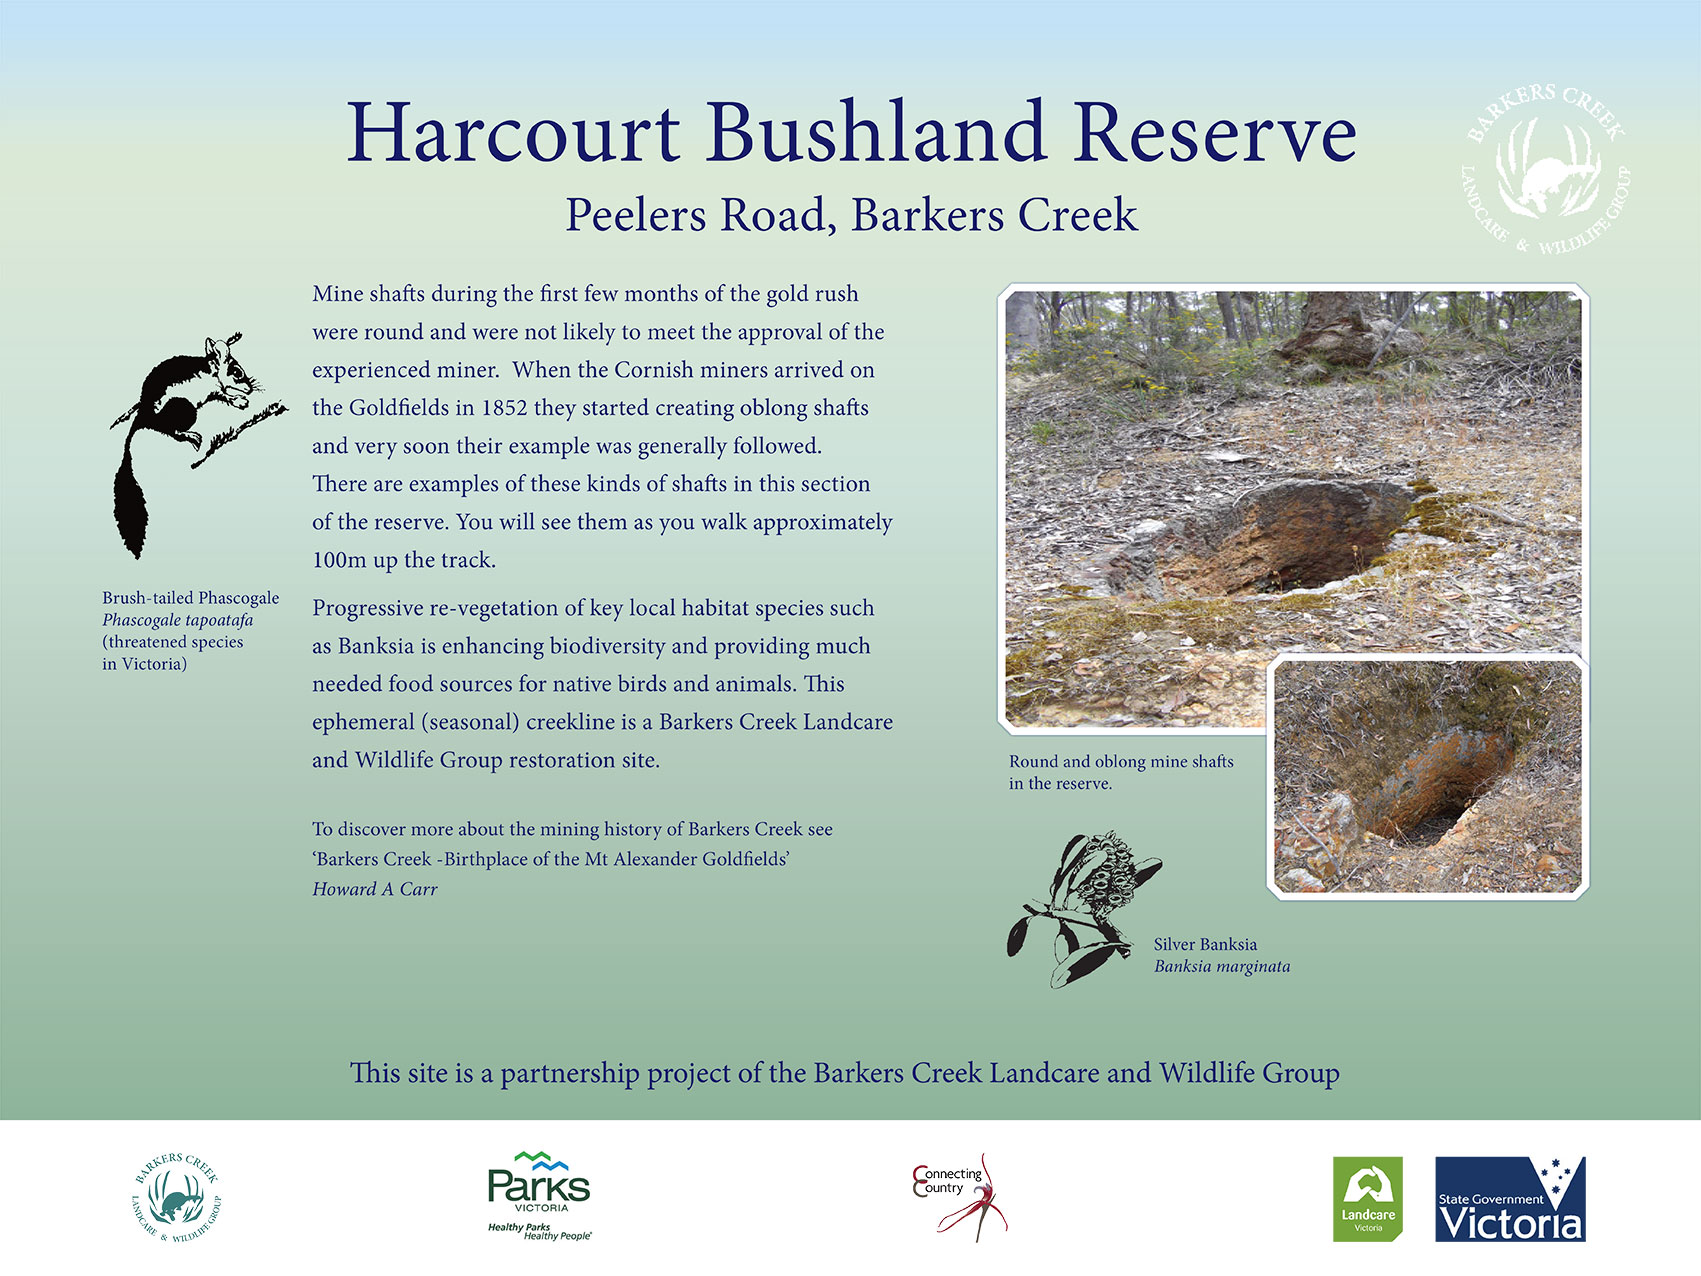 Signage at Harcourt Bushland Reserve